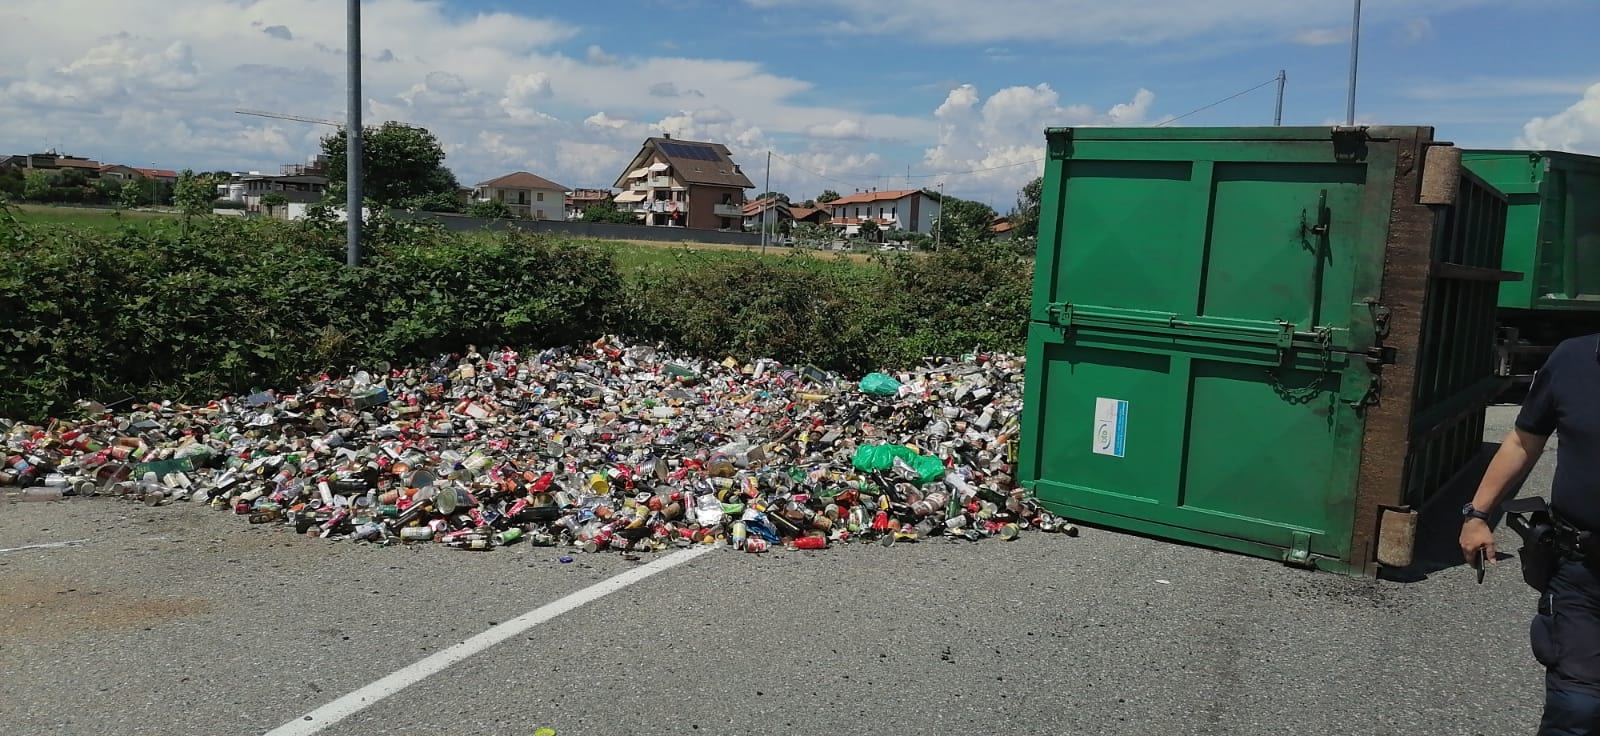 Uboldo, camion perde container: migliaia di lattine usate finiscono in strada